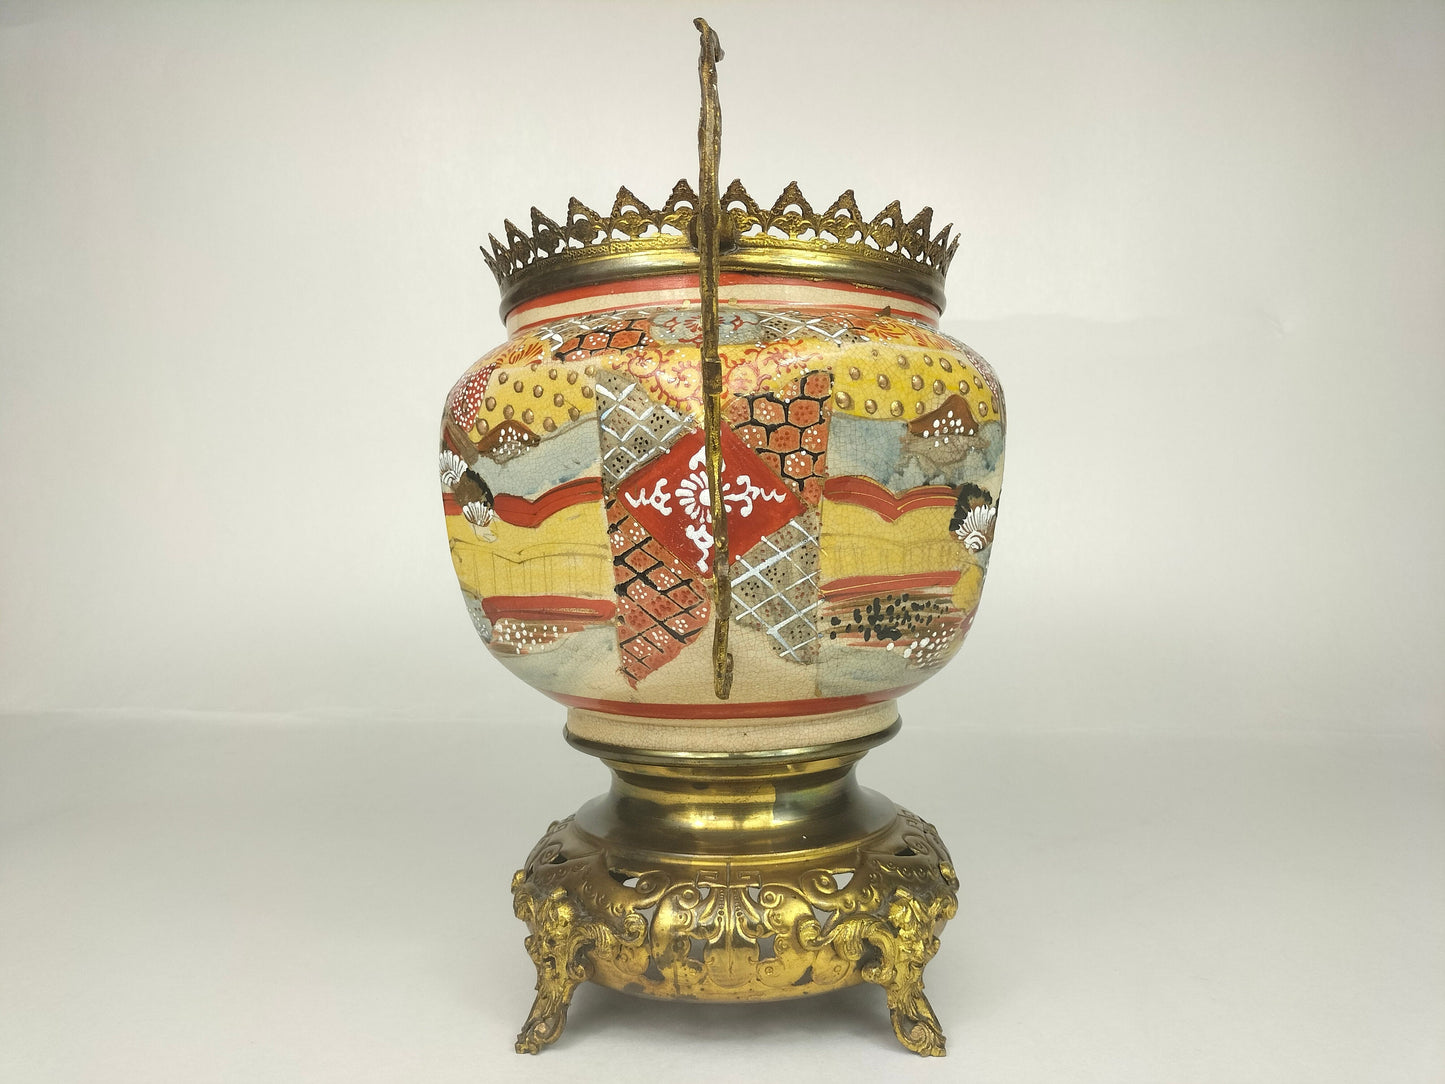 Balang satsuma Jepun antik dihiasi dengan loyang disepuh // abad ke-19 - Zaman Meiji